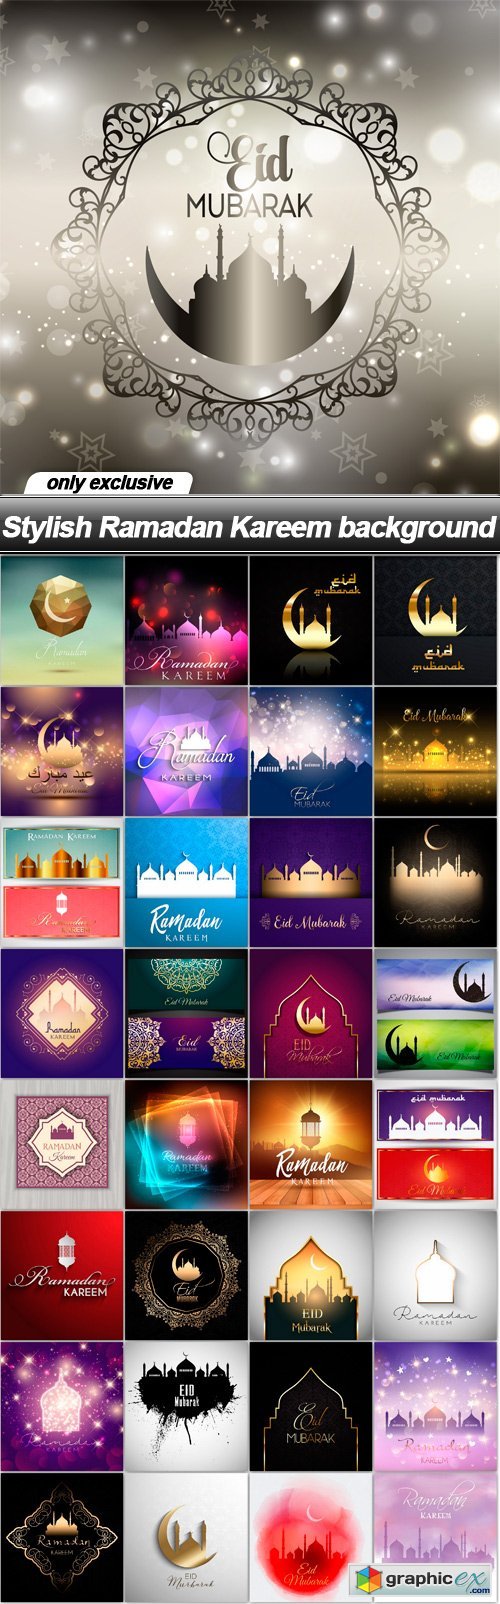 Stylish Ramadan Kareem background - 33 EPS